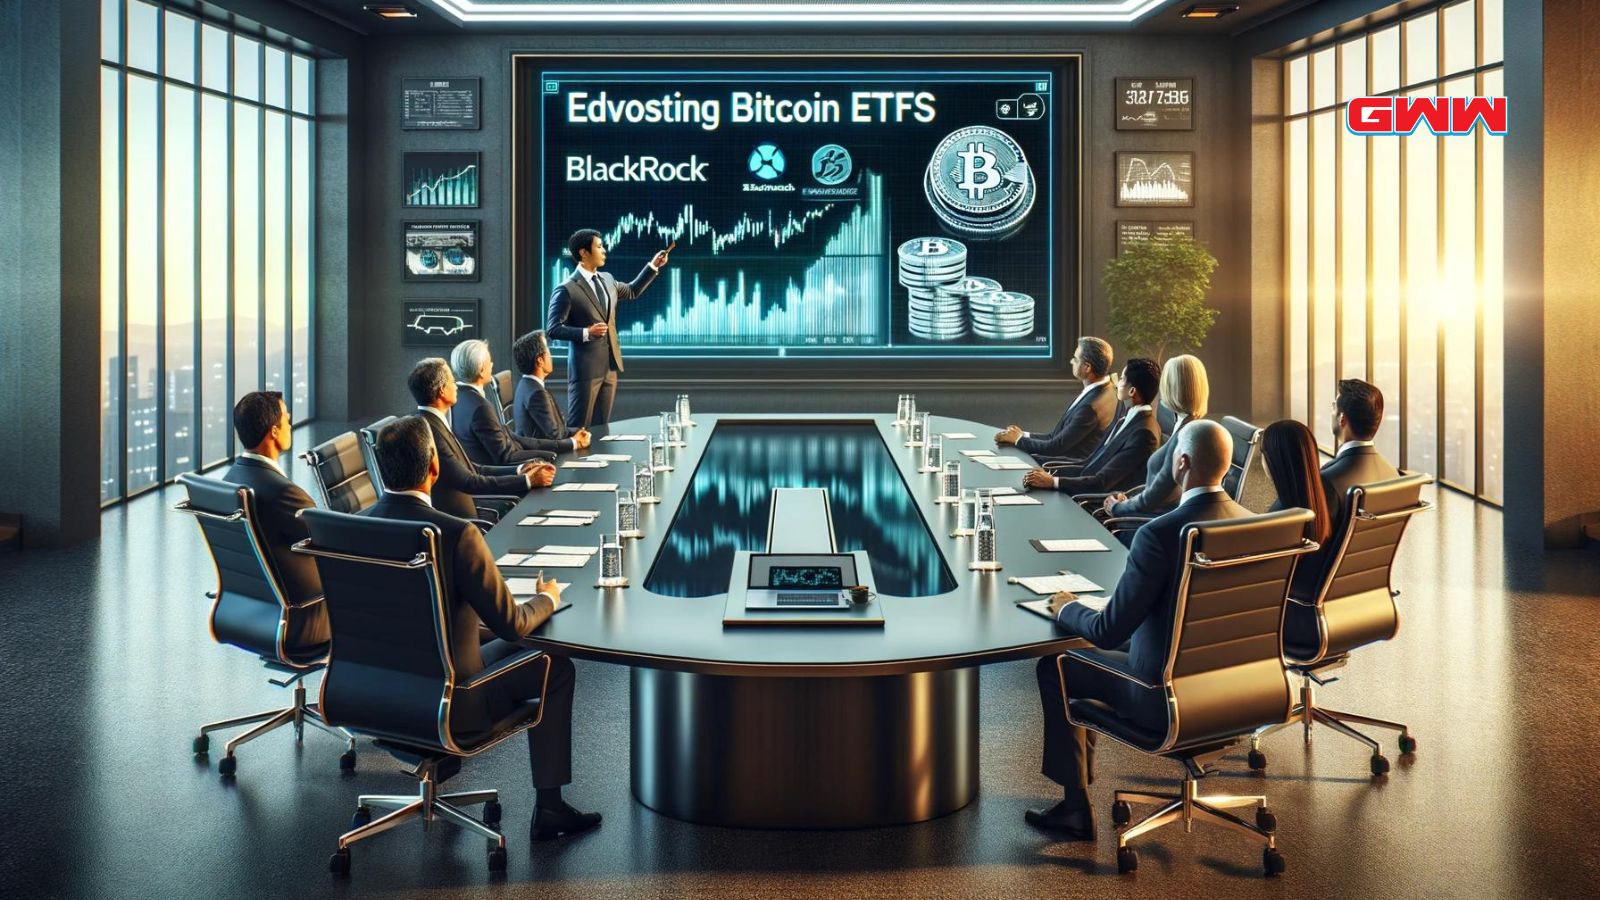 Un ejecutivo de BlackRock presenta ETFs de Bitcoin en la sala de juntas